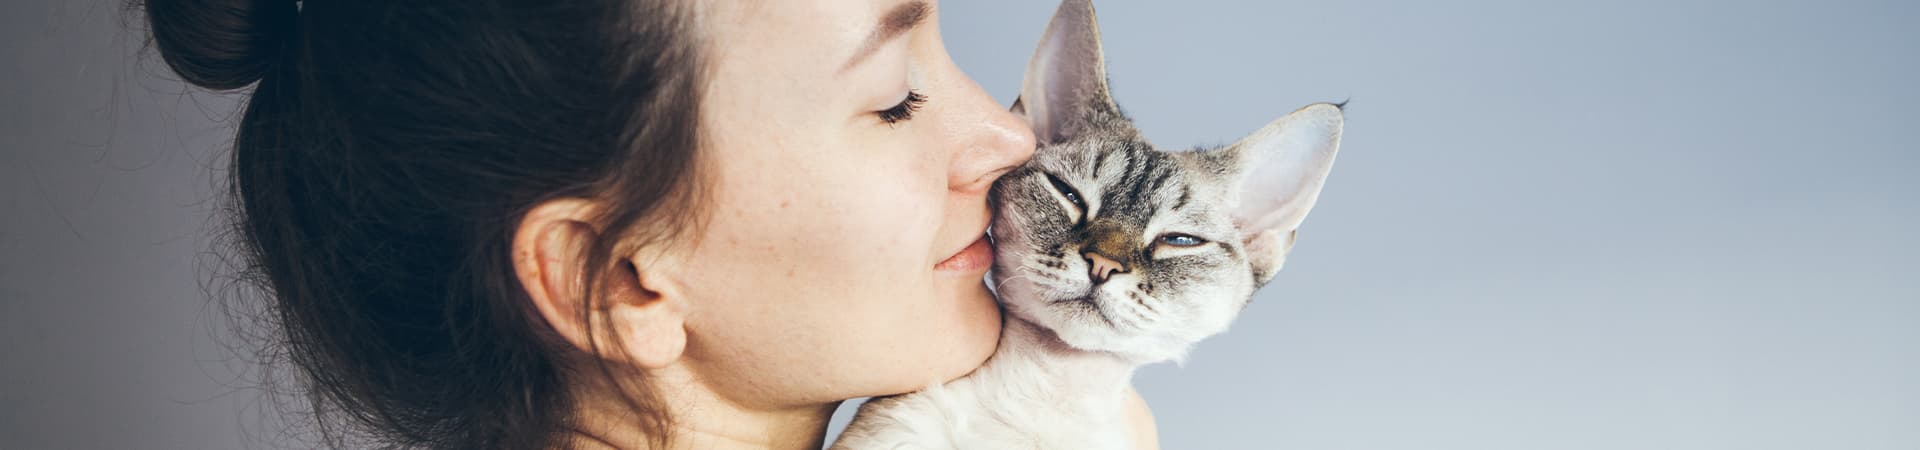 Katze kuschelt auf der Schulter seiner Besitzerin